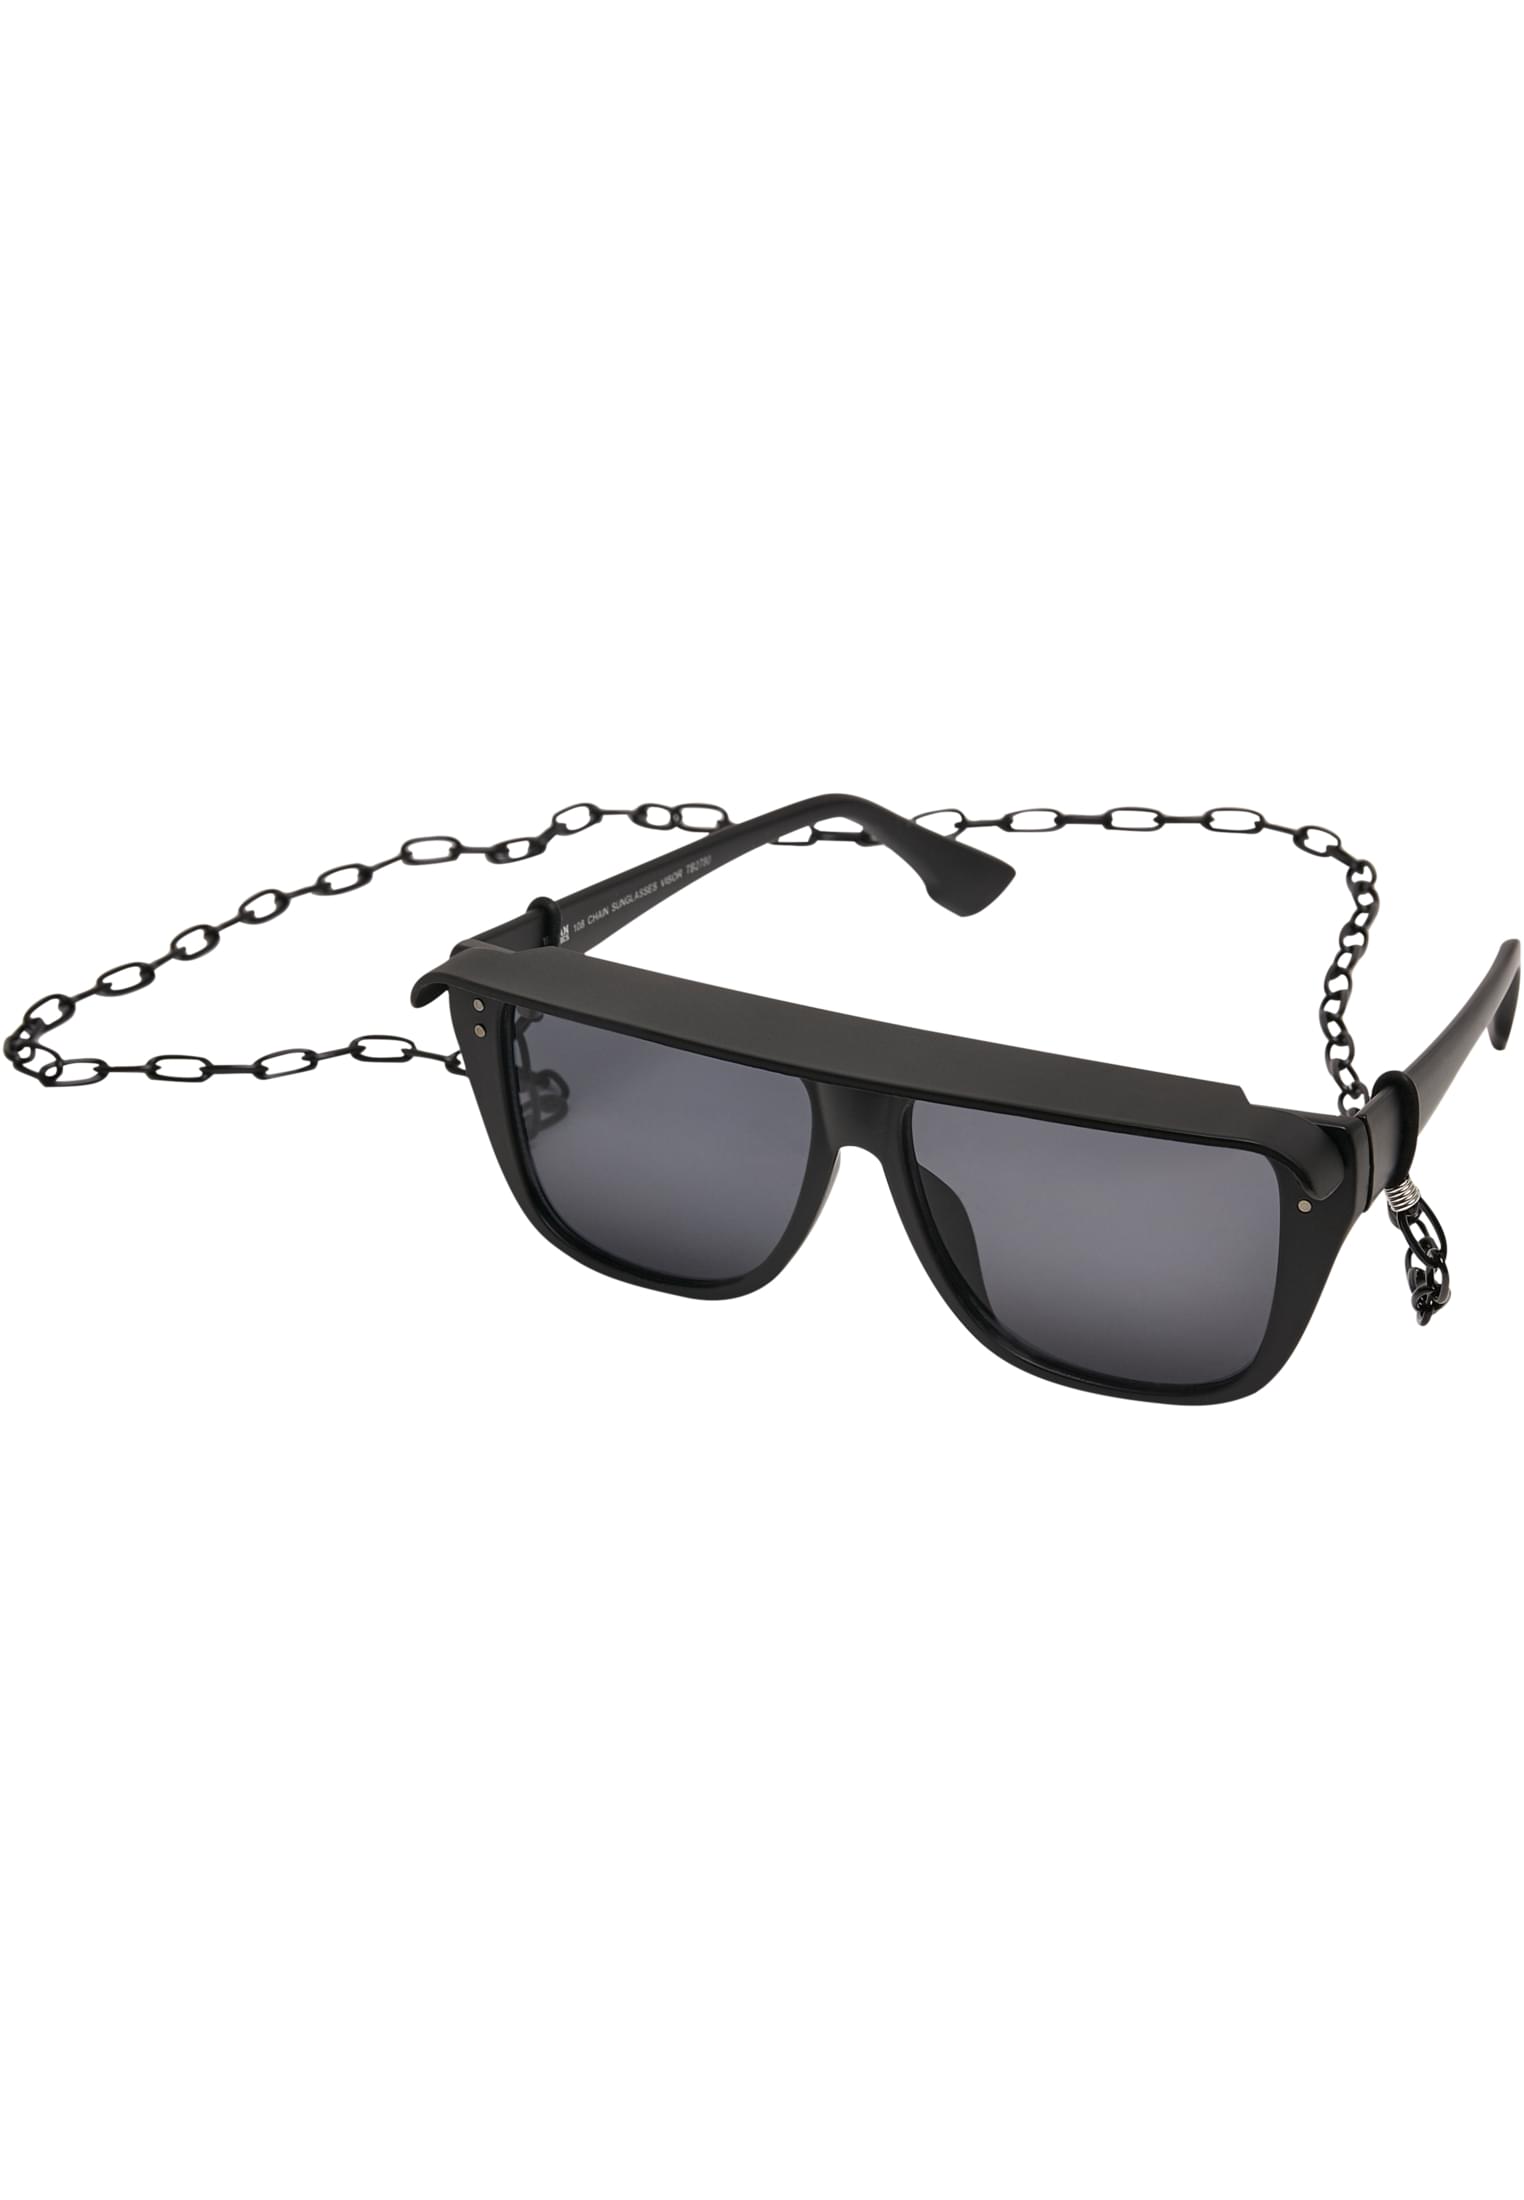 108 Visor-TB2780 Chain Sunglasses